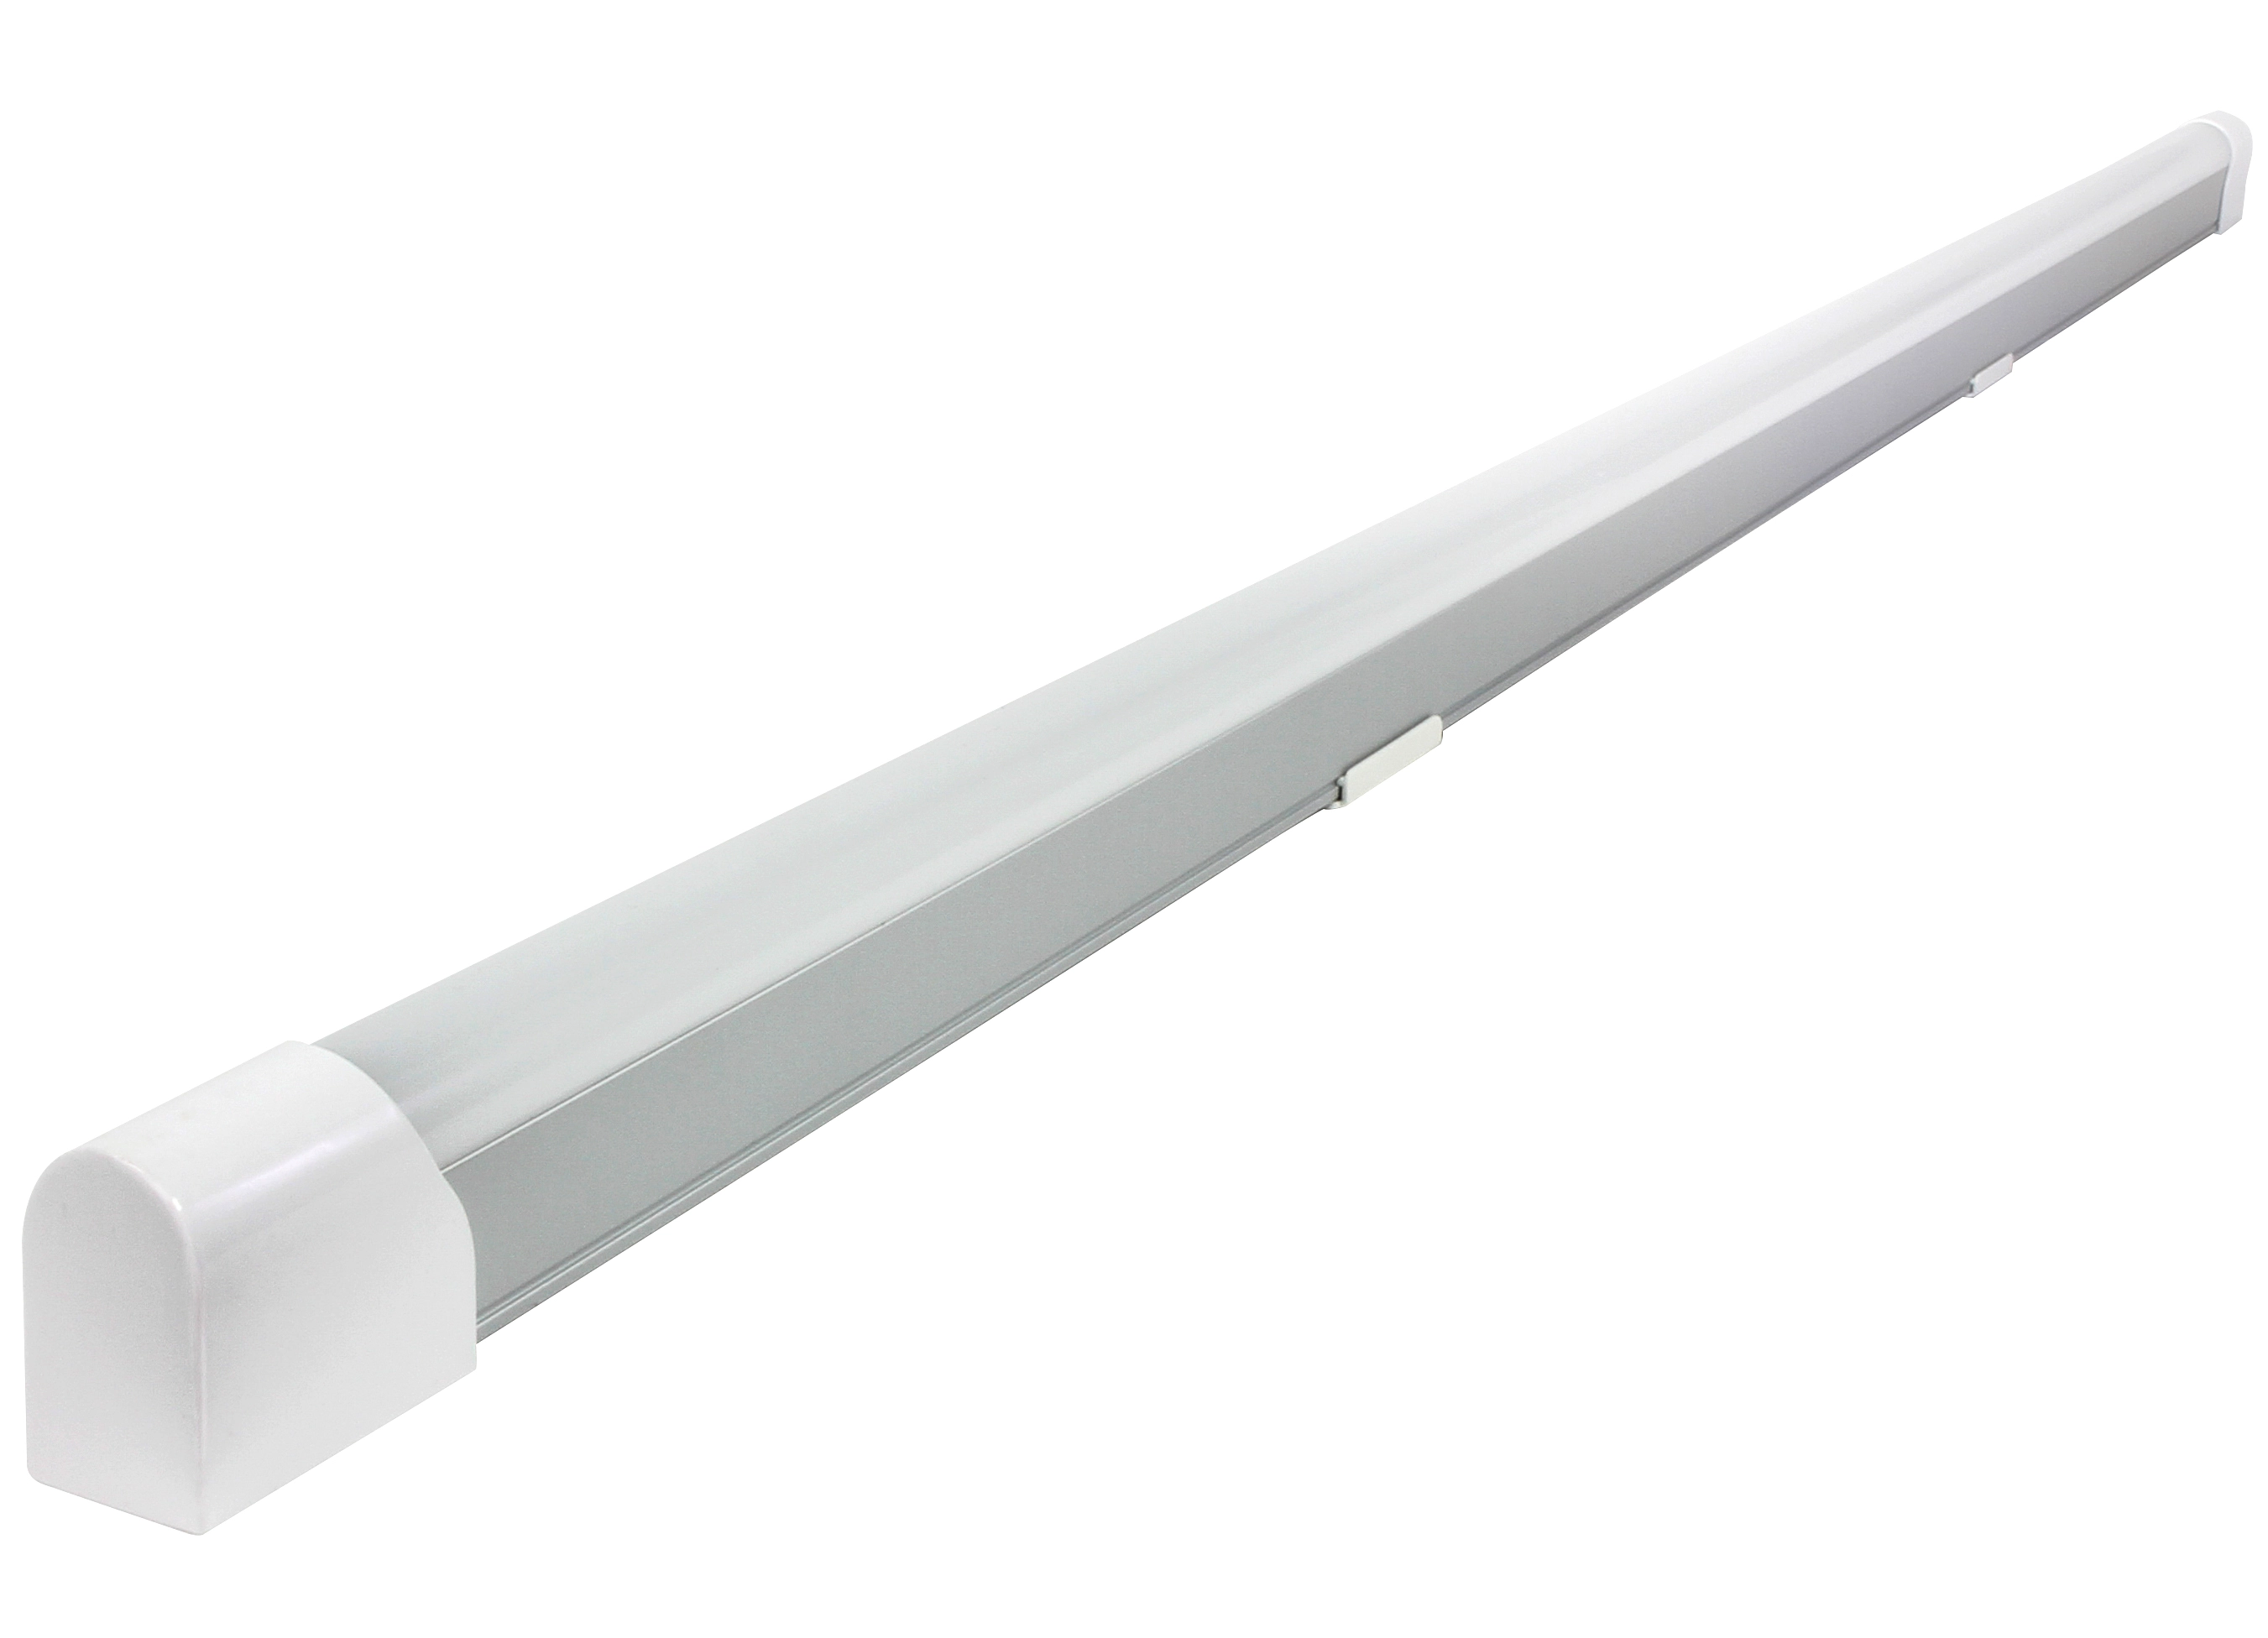 Barre lumineuse LED complète Blanc / Longueur 123 cm / 1 x 20 W